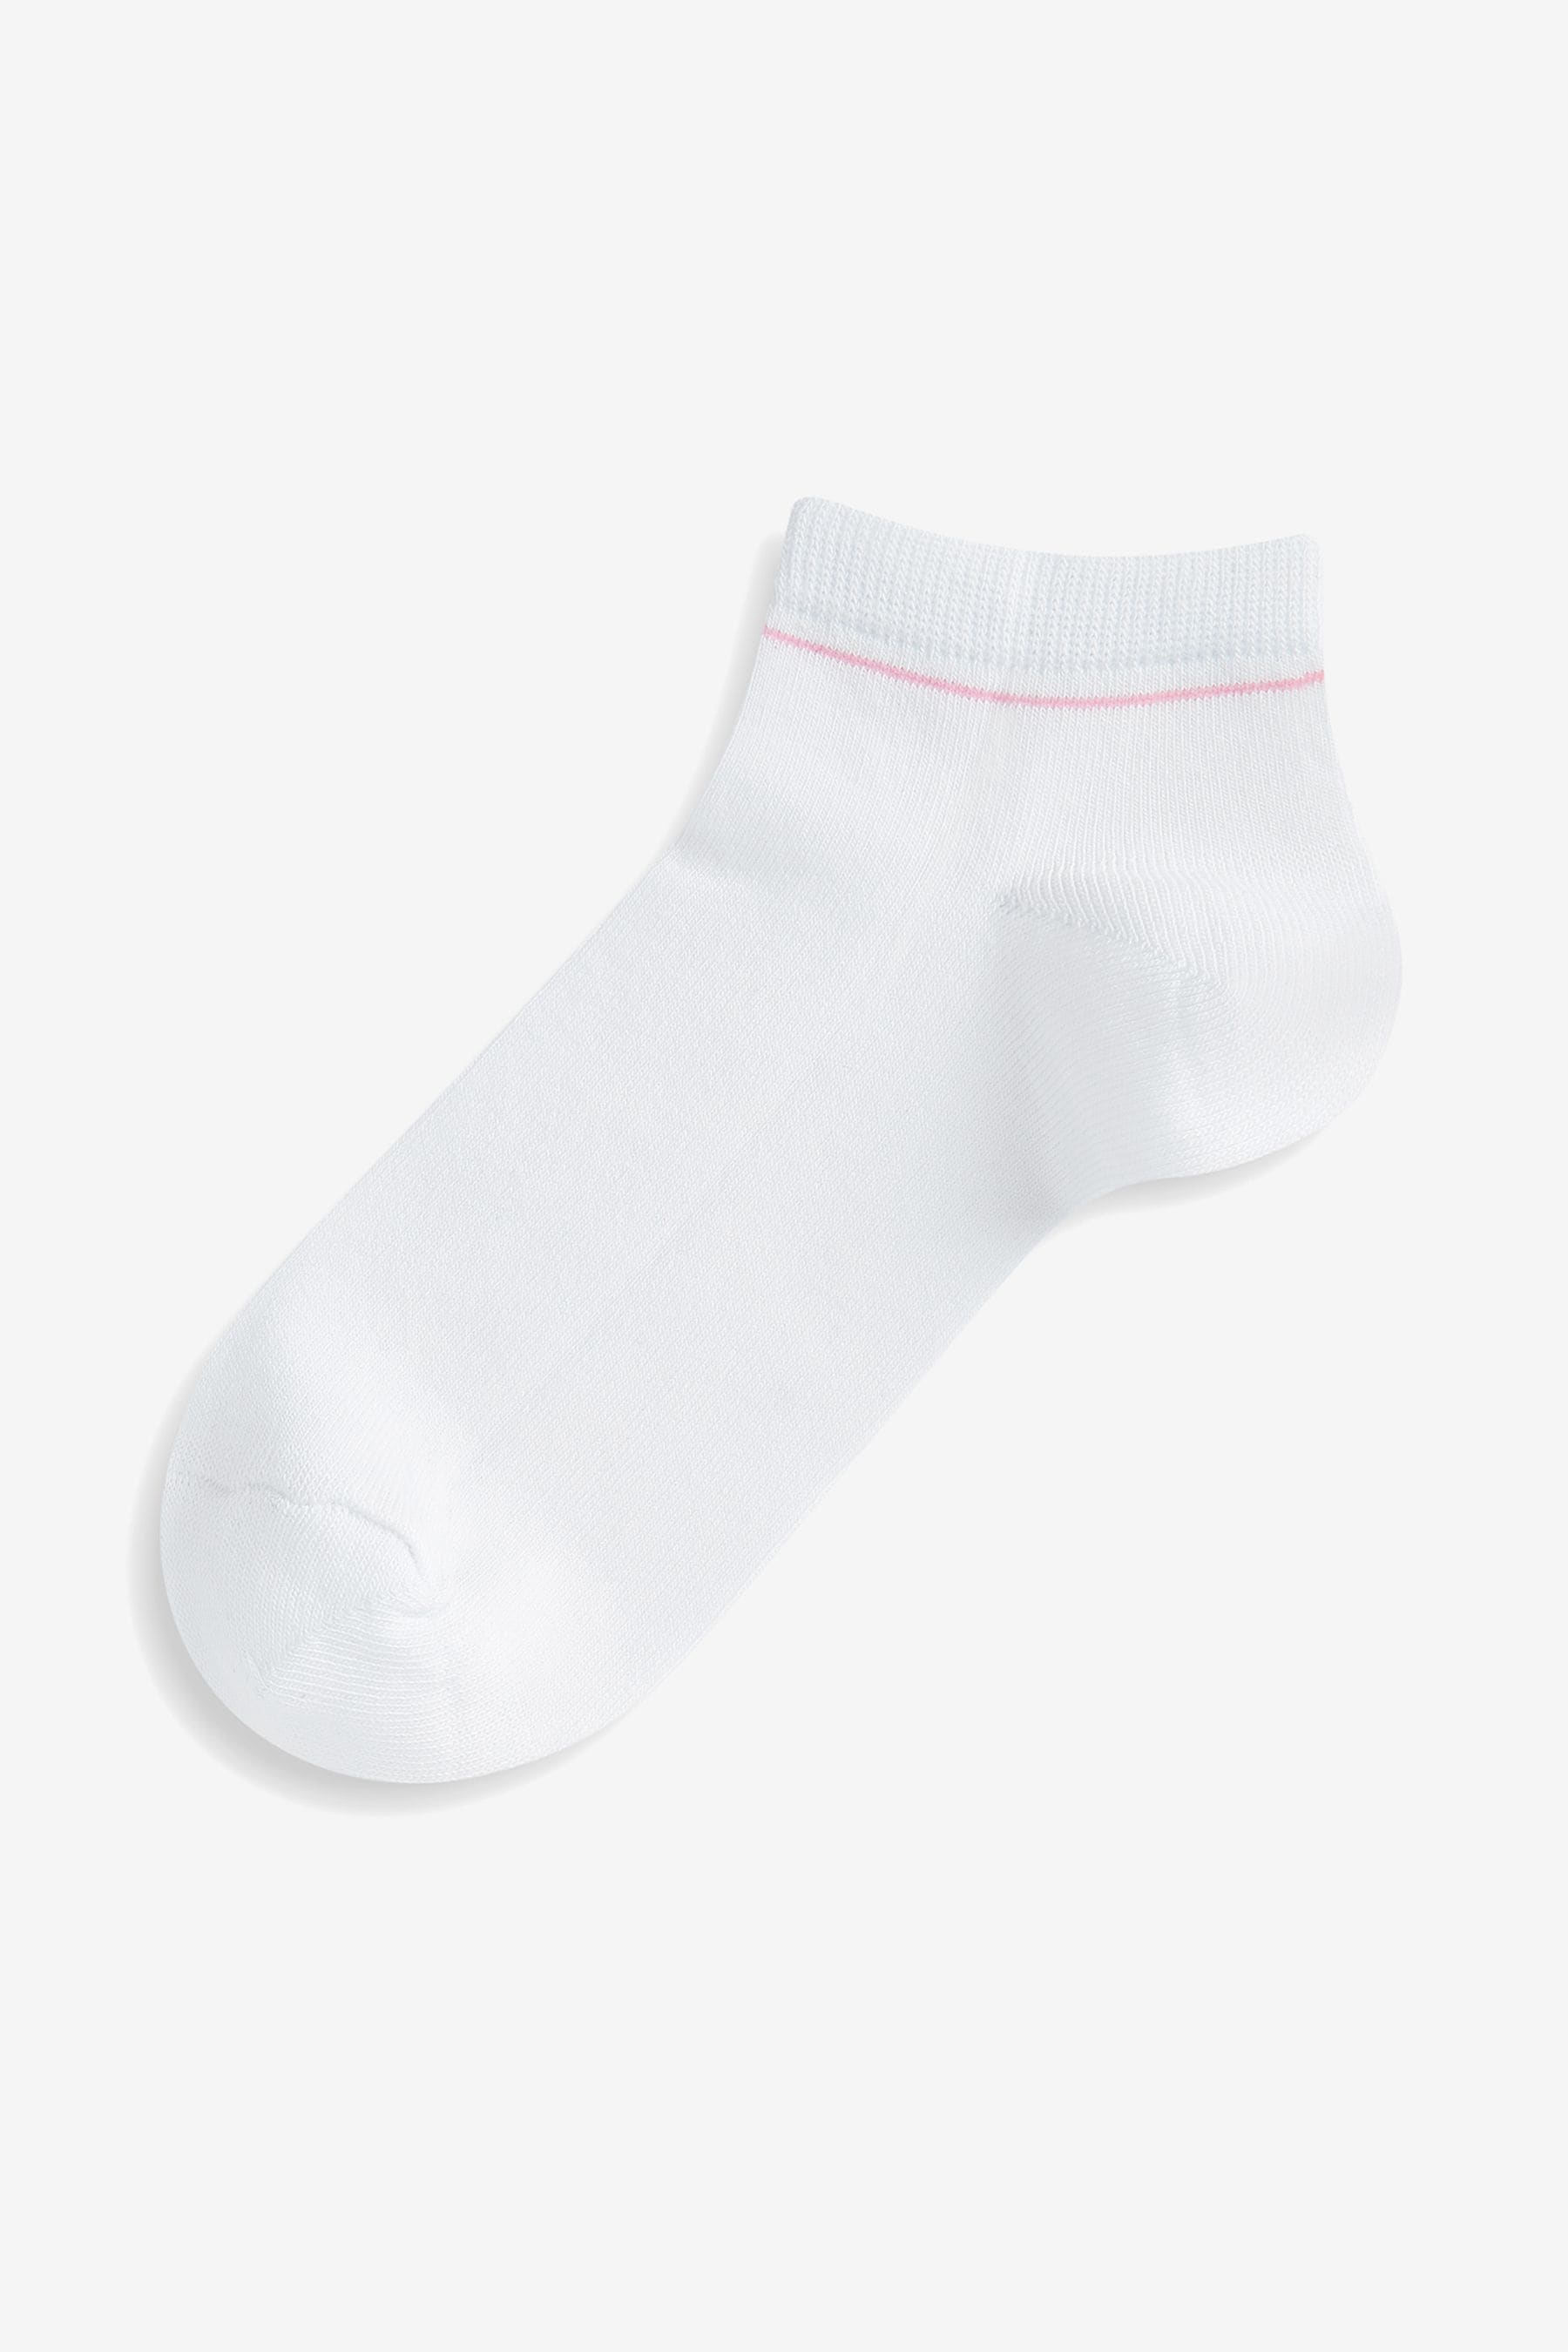 Buy White Modal Trainer Socks 4 Pack from the Next UK online shop